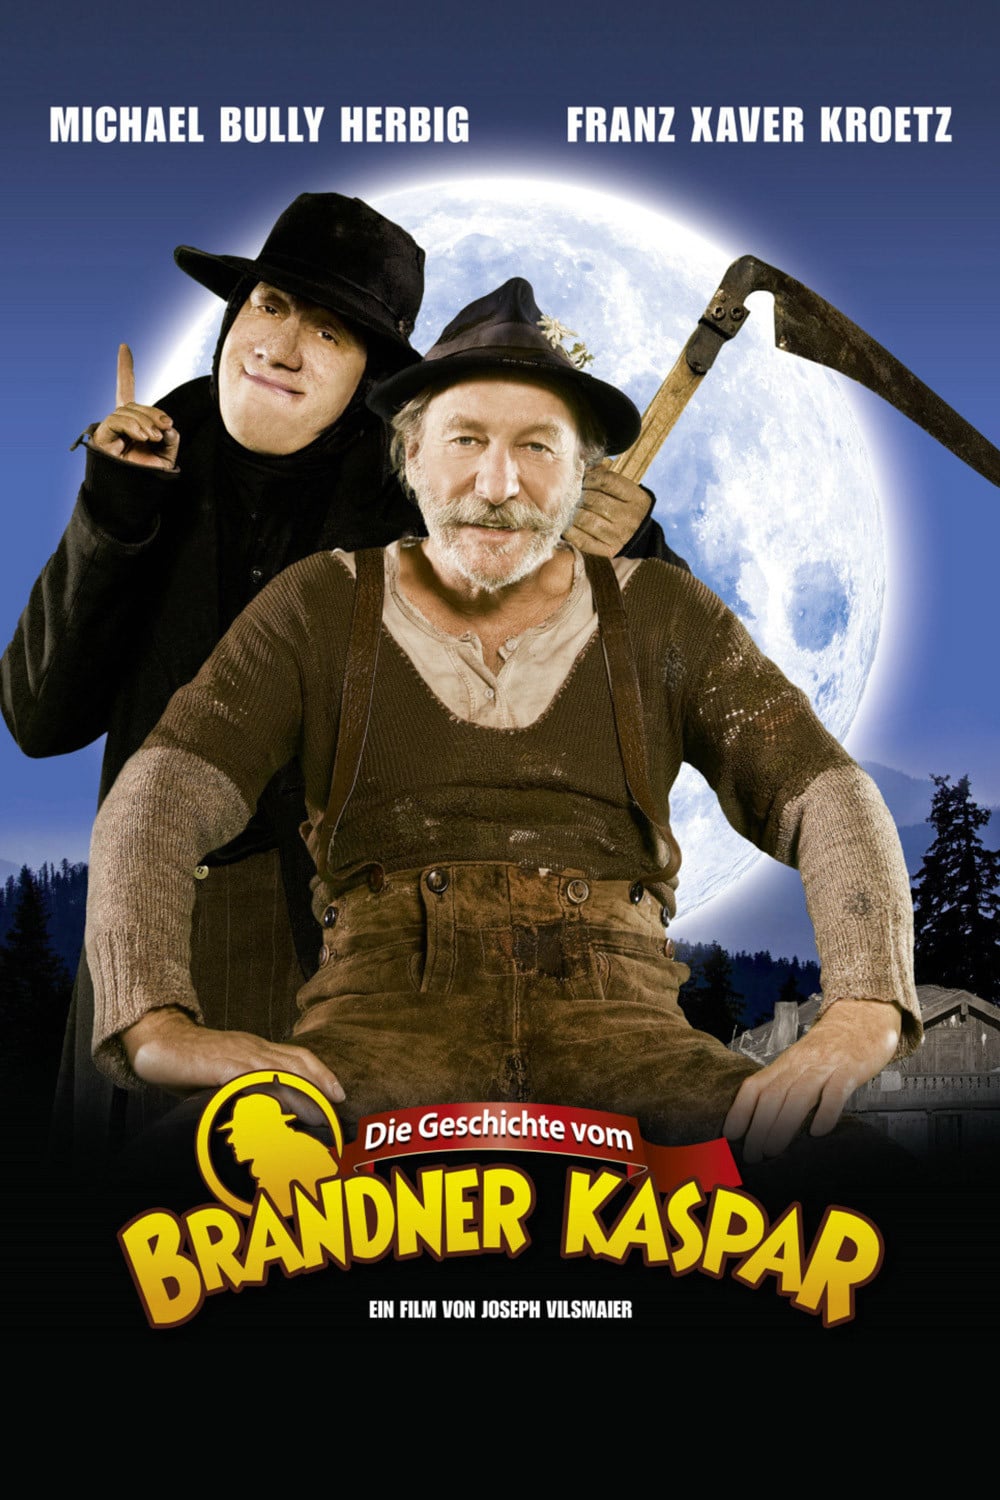 Plakat von "Die Geschichte vom Brandner Kaspar"